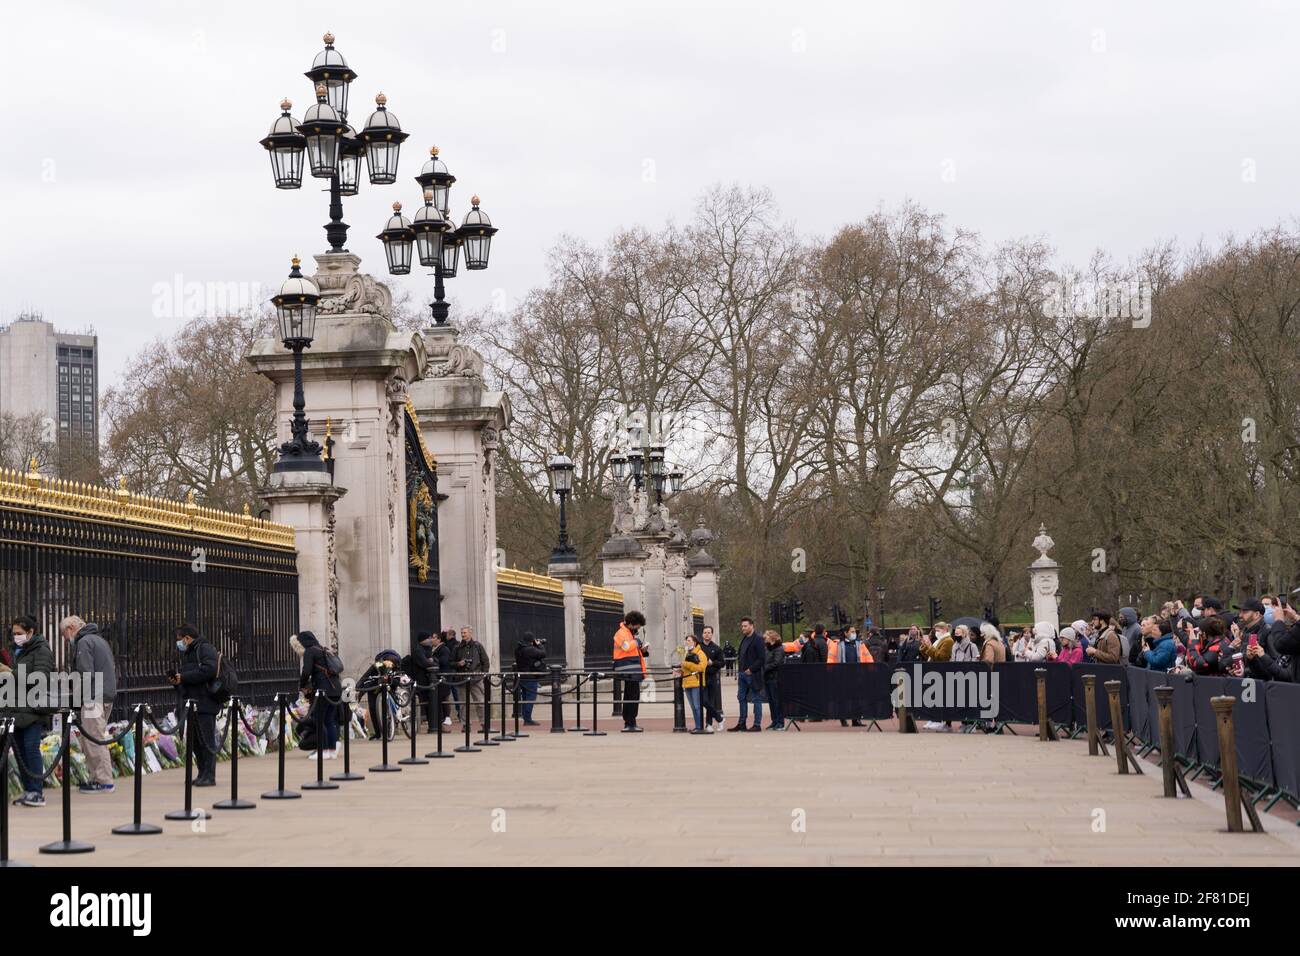 Les gens posent des hommages floraux au duc d'Édimbourg à l'extérieur de Buckingham Palace, Londres Banque D'Images